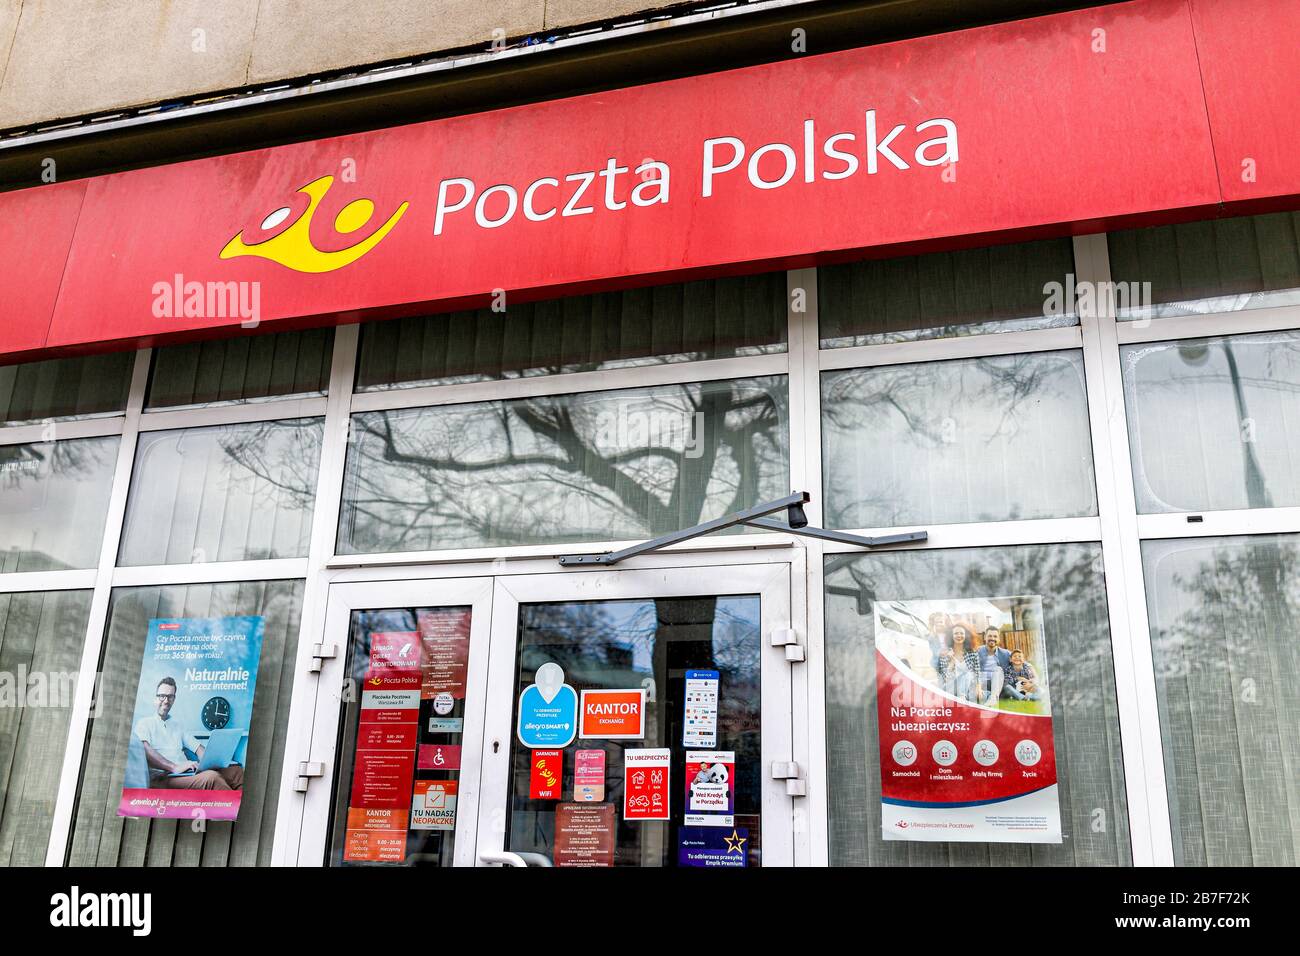 Warschau, Polen - 25. Dezember 2019: Eingangstür mit Fassade zu Poczta Polska oder der polnischen Postfiliale in Warszawa mit niemandem Stockfoto